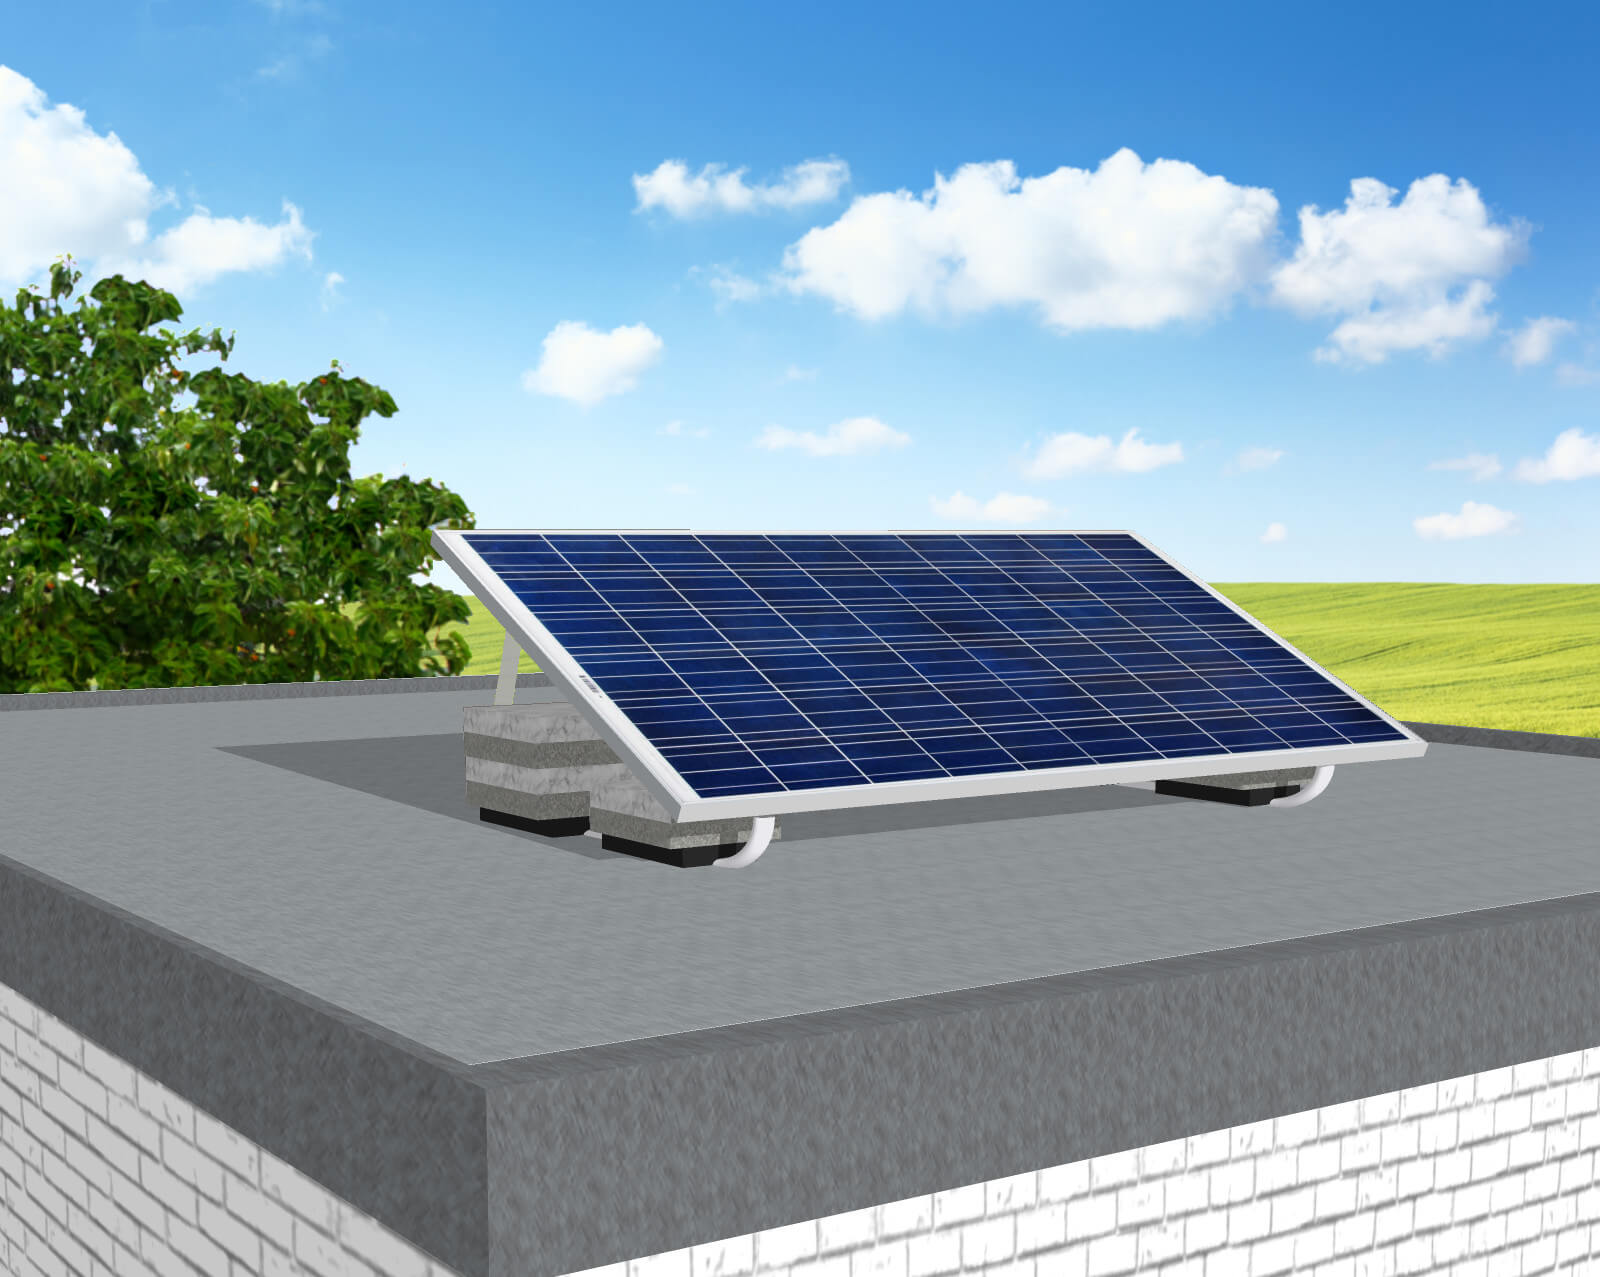 Garten Solaranlage Komplett - Solaranlage Fur Den Garten Solarstrom Fur